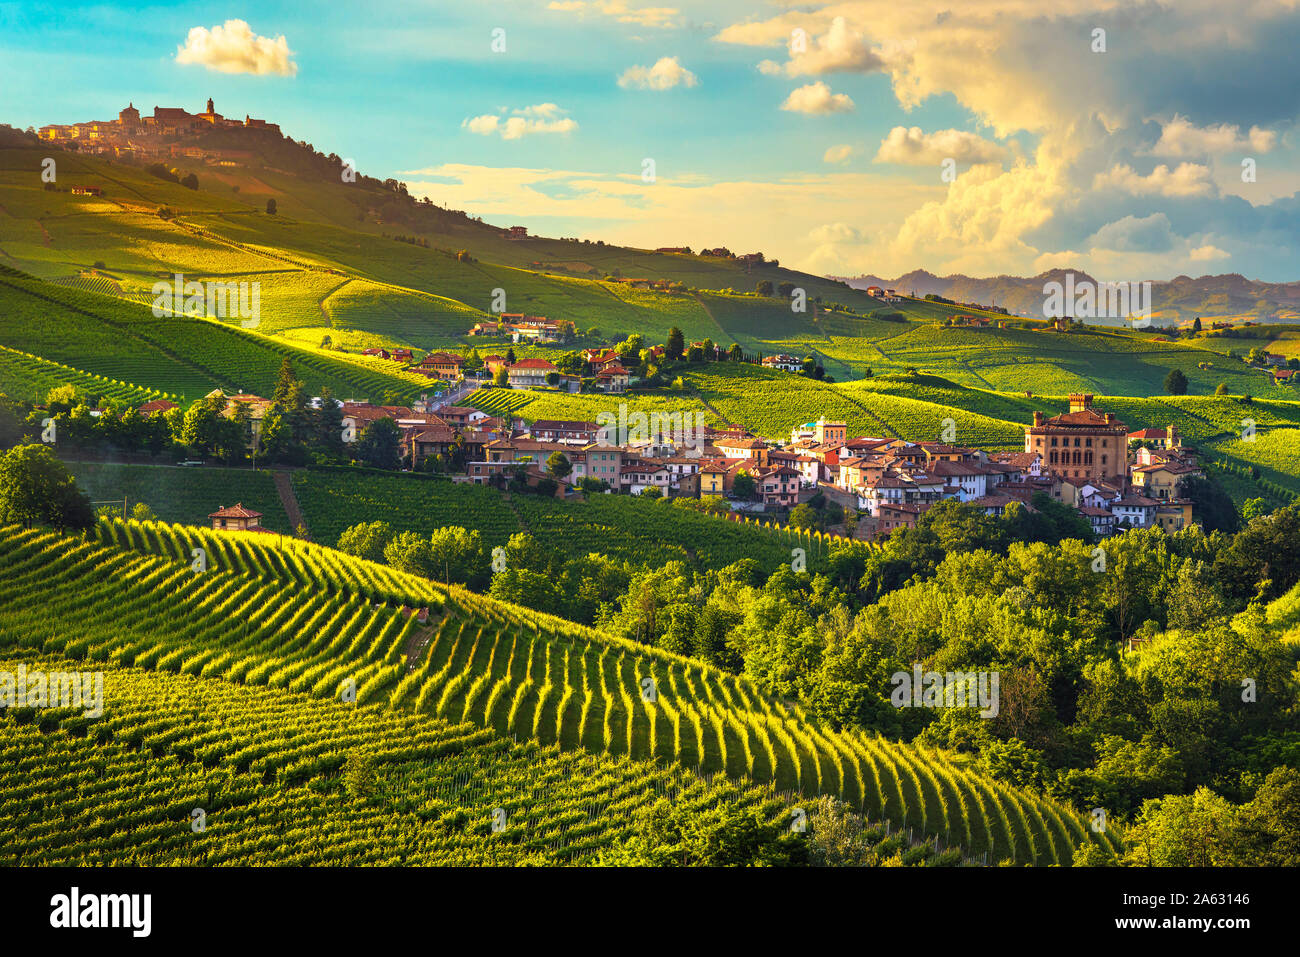 Les vignobles des Langhe, Barolo panorama Village, Site de l'Unesco, Piémont, Italie du nord de l'Europe. Banque D'Images